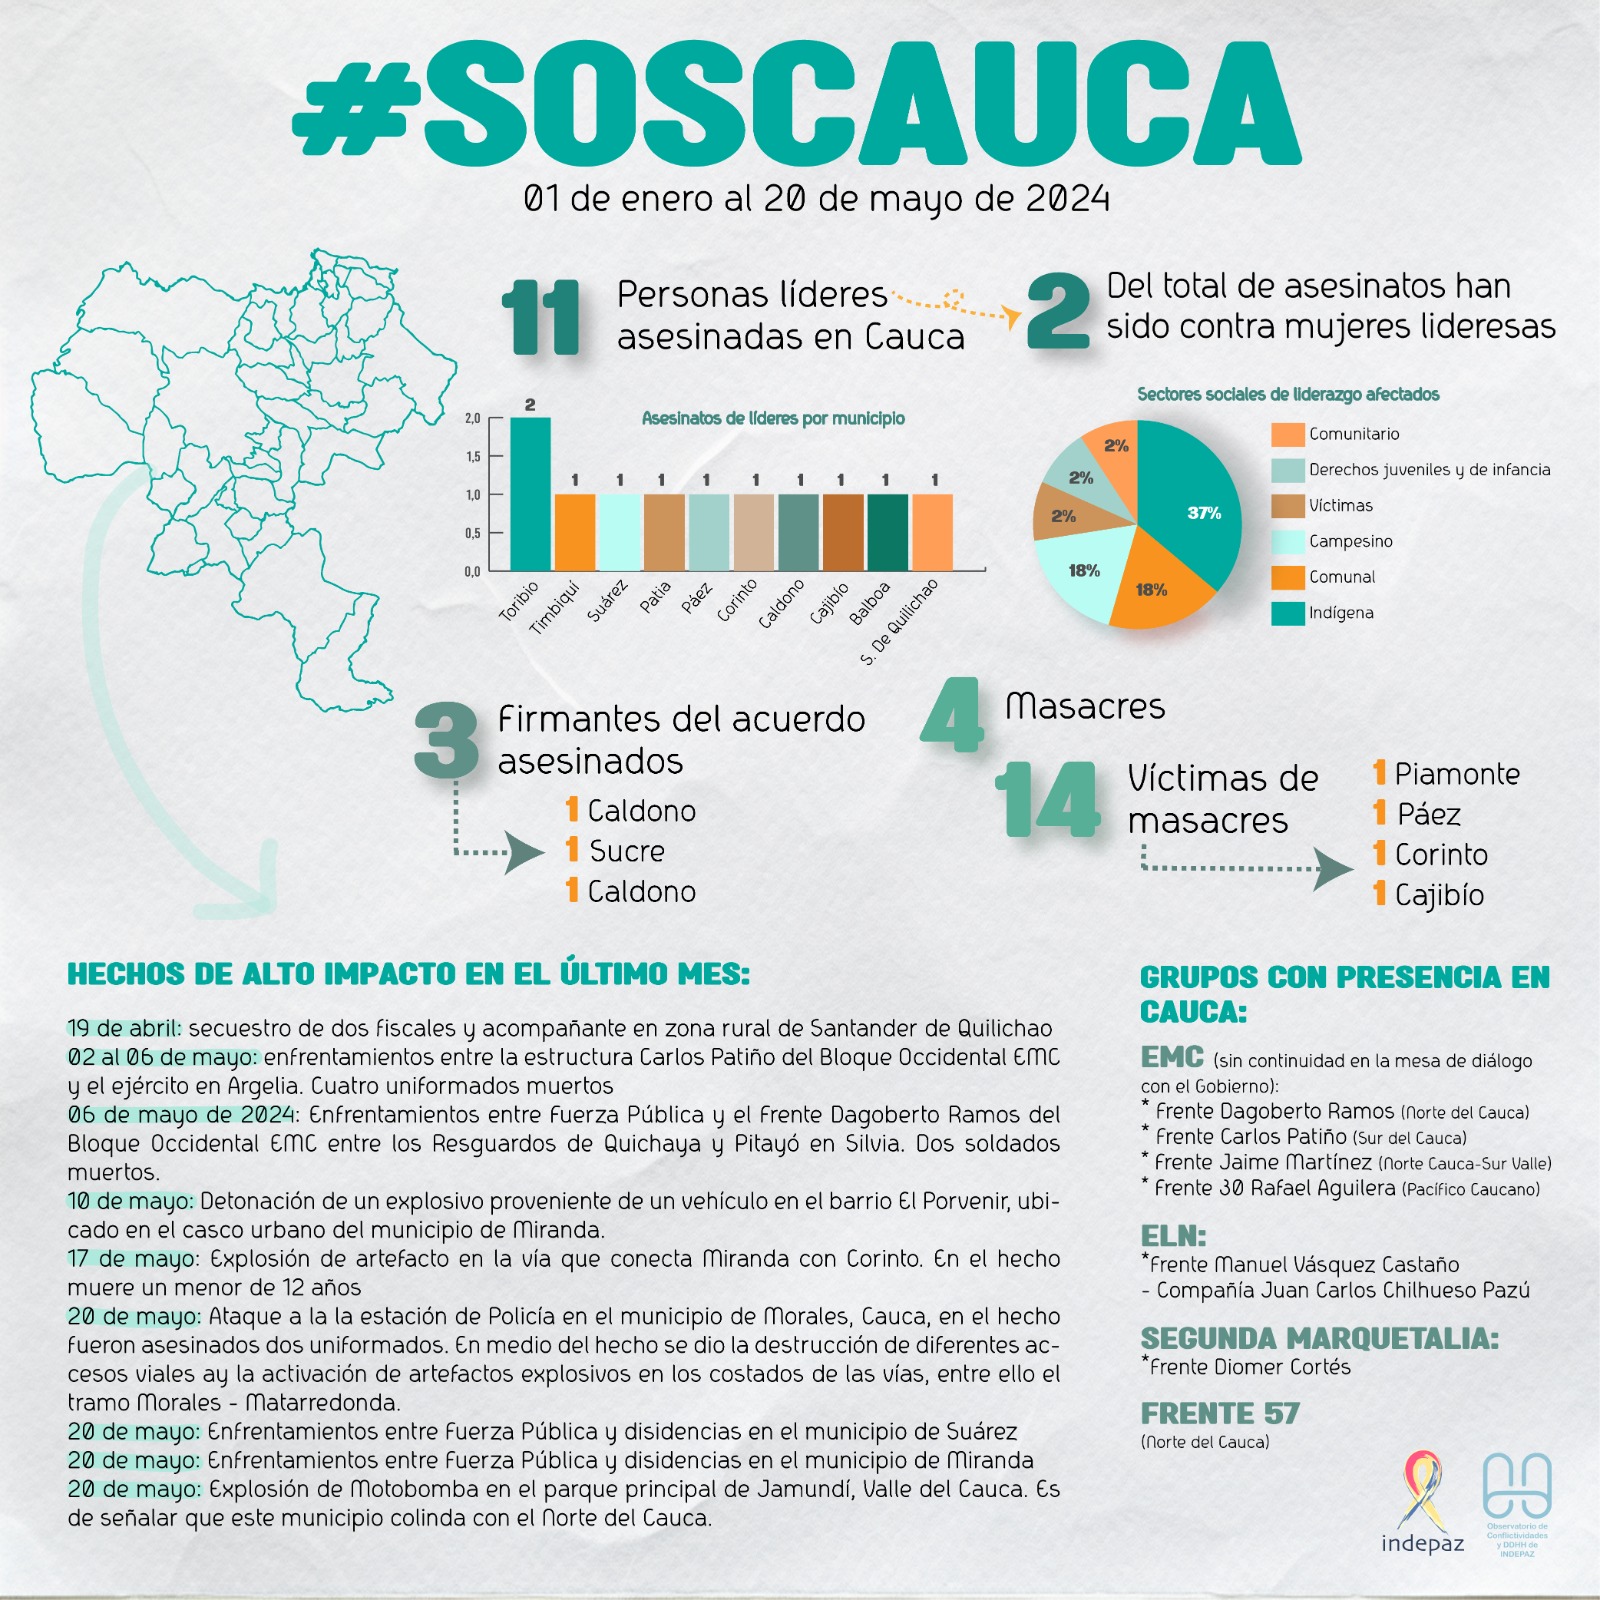 #soscauca